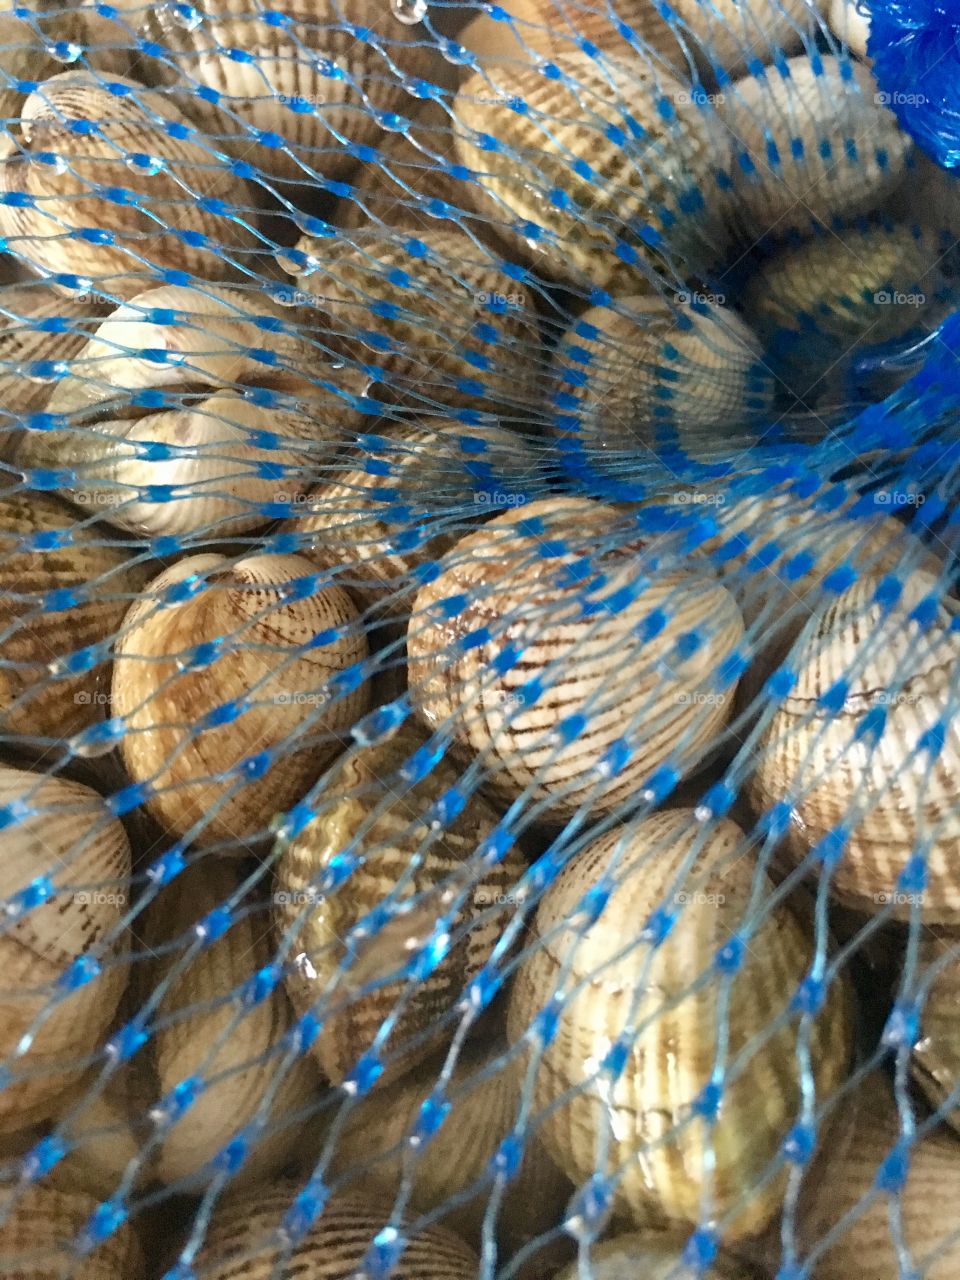 Shellfish in a blue net